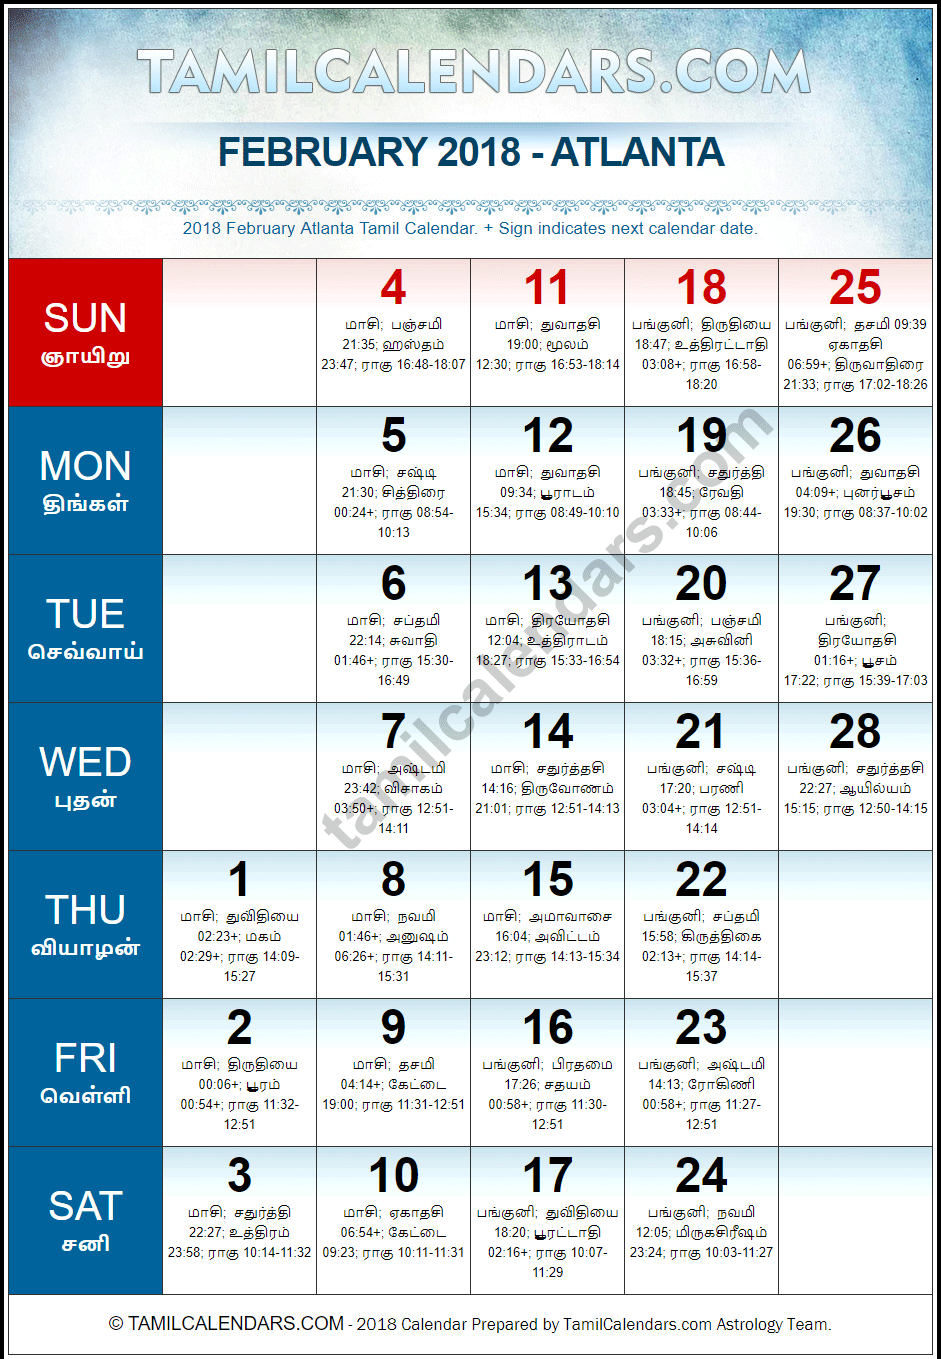 February 2018 Tamil Calendar for Atlanta, USA